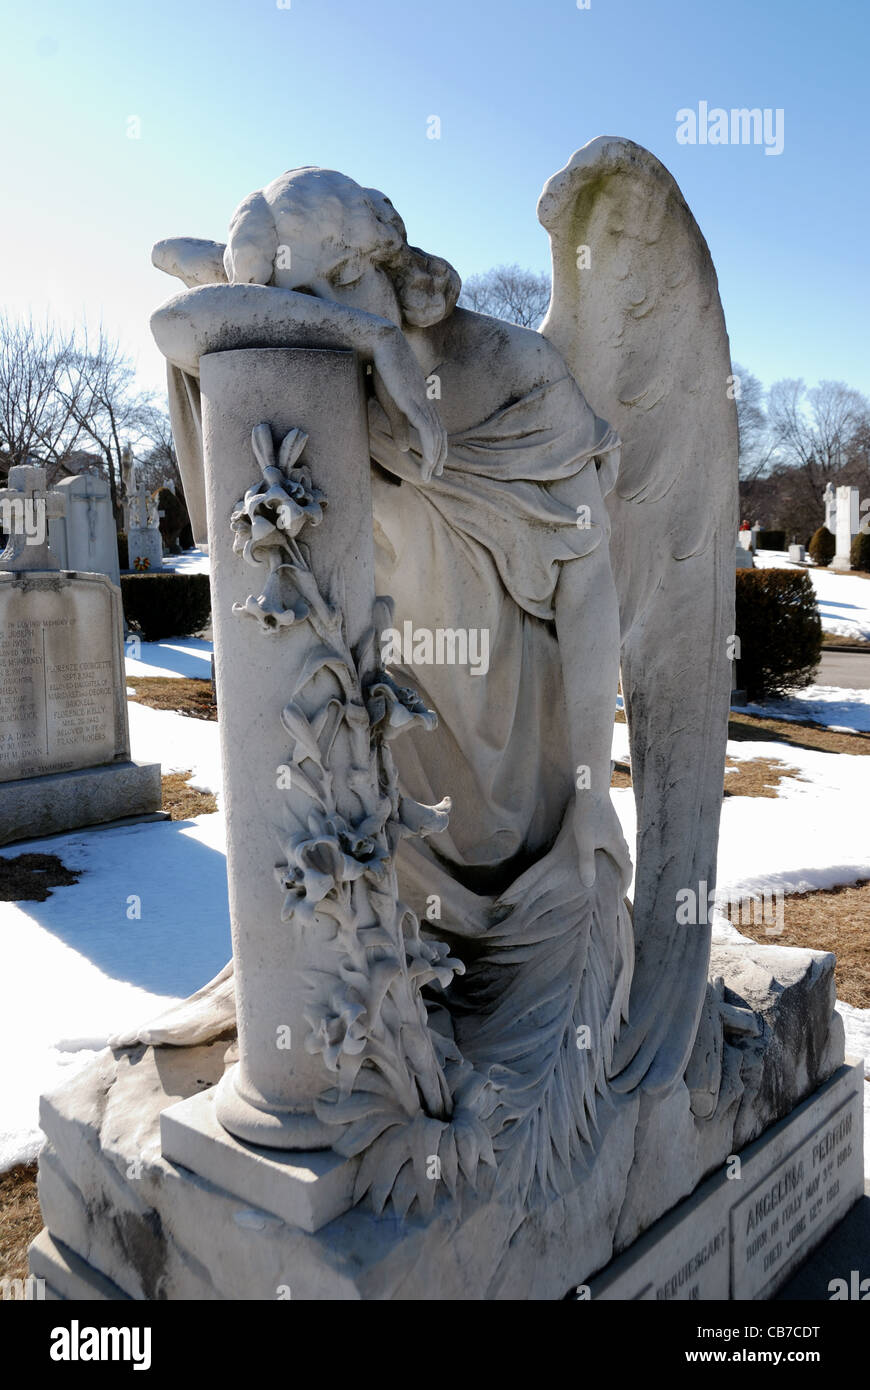 Ein aufwändiges und detailliertes Friedhof-Denkmal eines Engels, der weint. Stockfoto